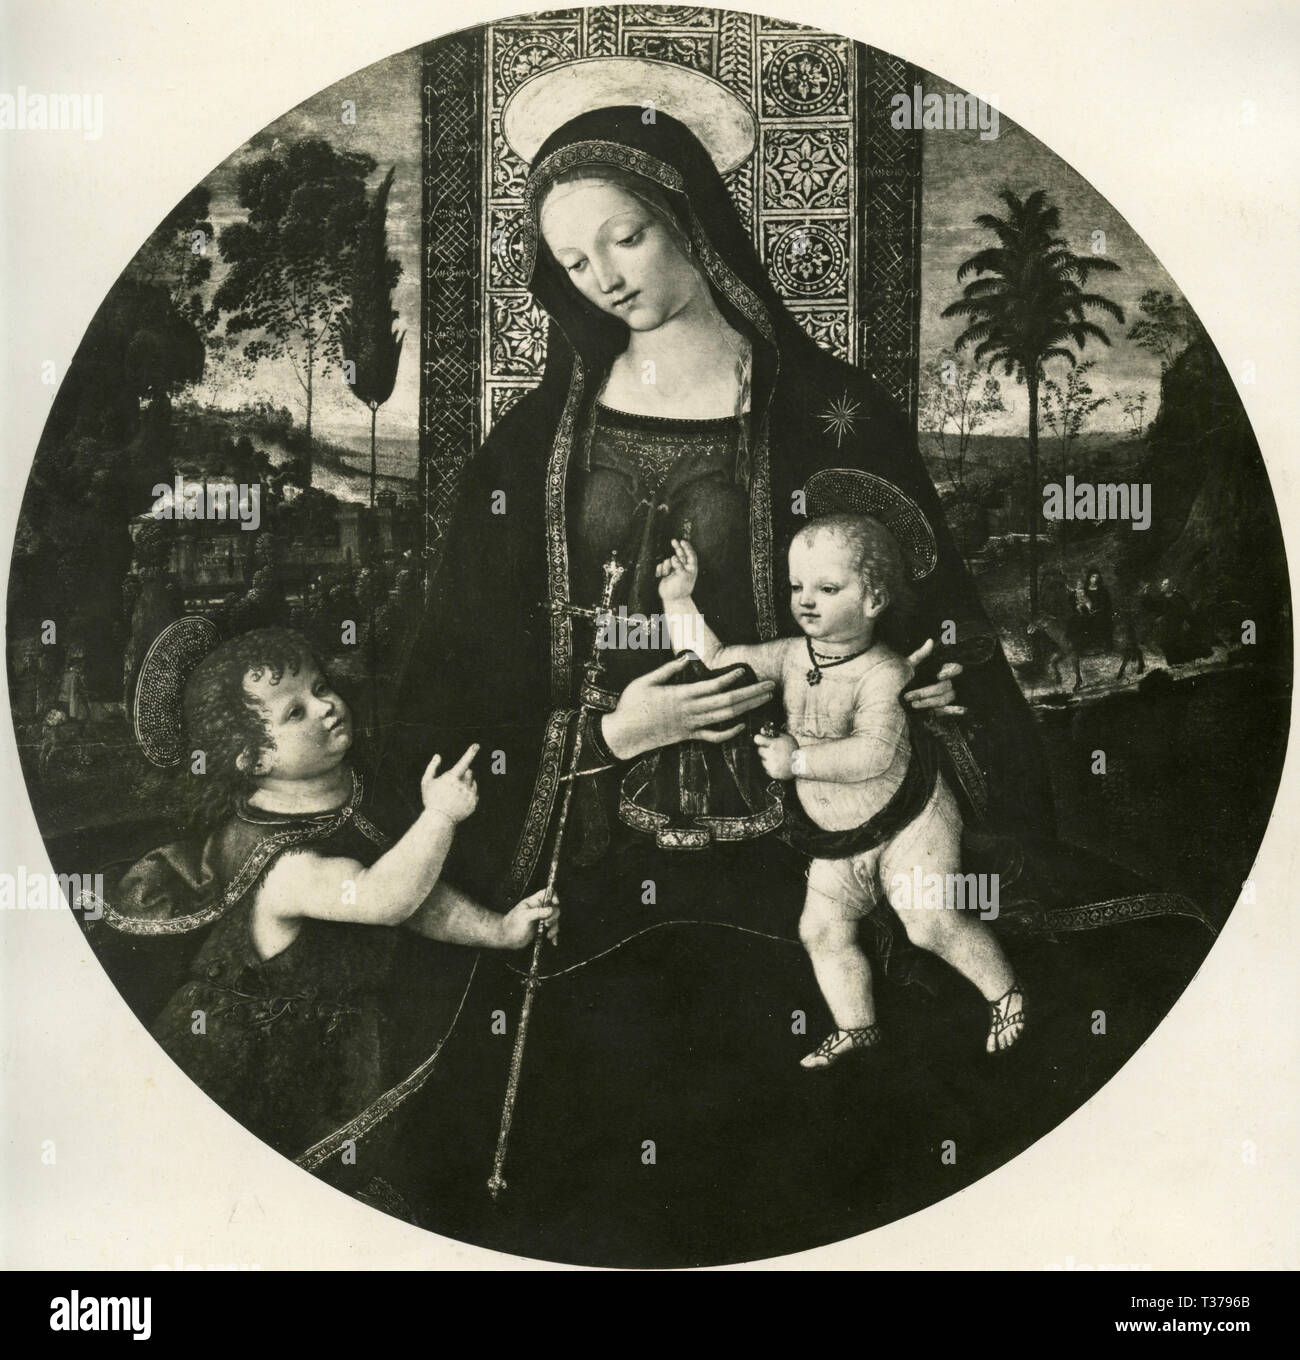 La Vierge et l'enfant avec l'enfant Saint Jean Baptiste, la peinture de la Renaissance italienne Sandro Botticelli maître Banque D'Images